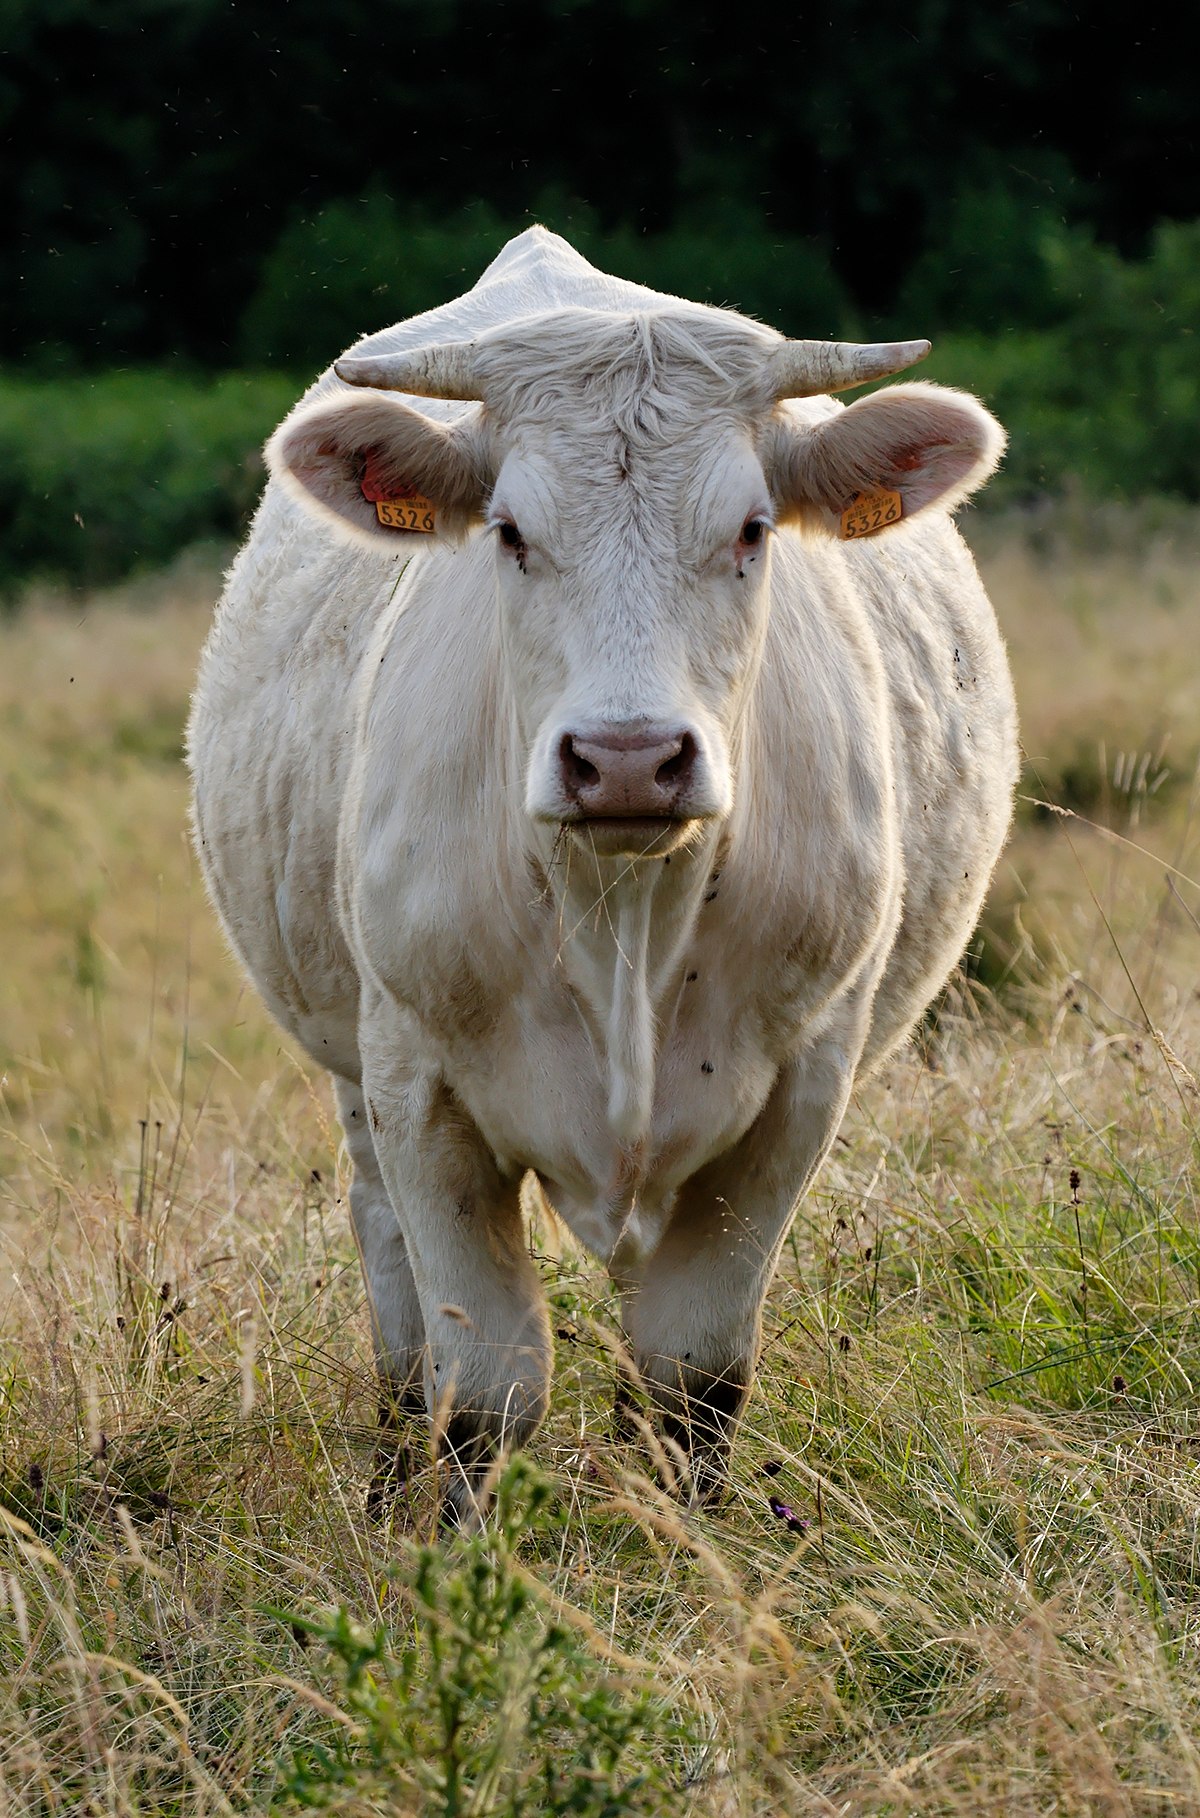 Nhìn con bò đang nằm lười nhác trên đồng cỏ, bạn sẽ cảm thấy thư giãn và bình yên. Chú ấy là một loài động vật hiền lành và đáng yêu, đừng bỏ lỡ cơ hội chứng kiến sự đáng yêu của con bò.